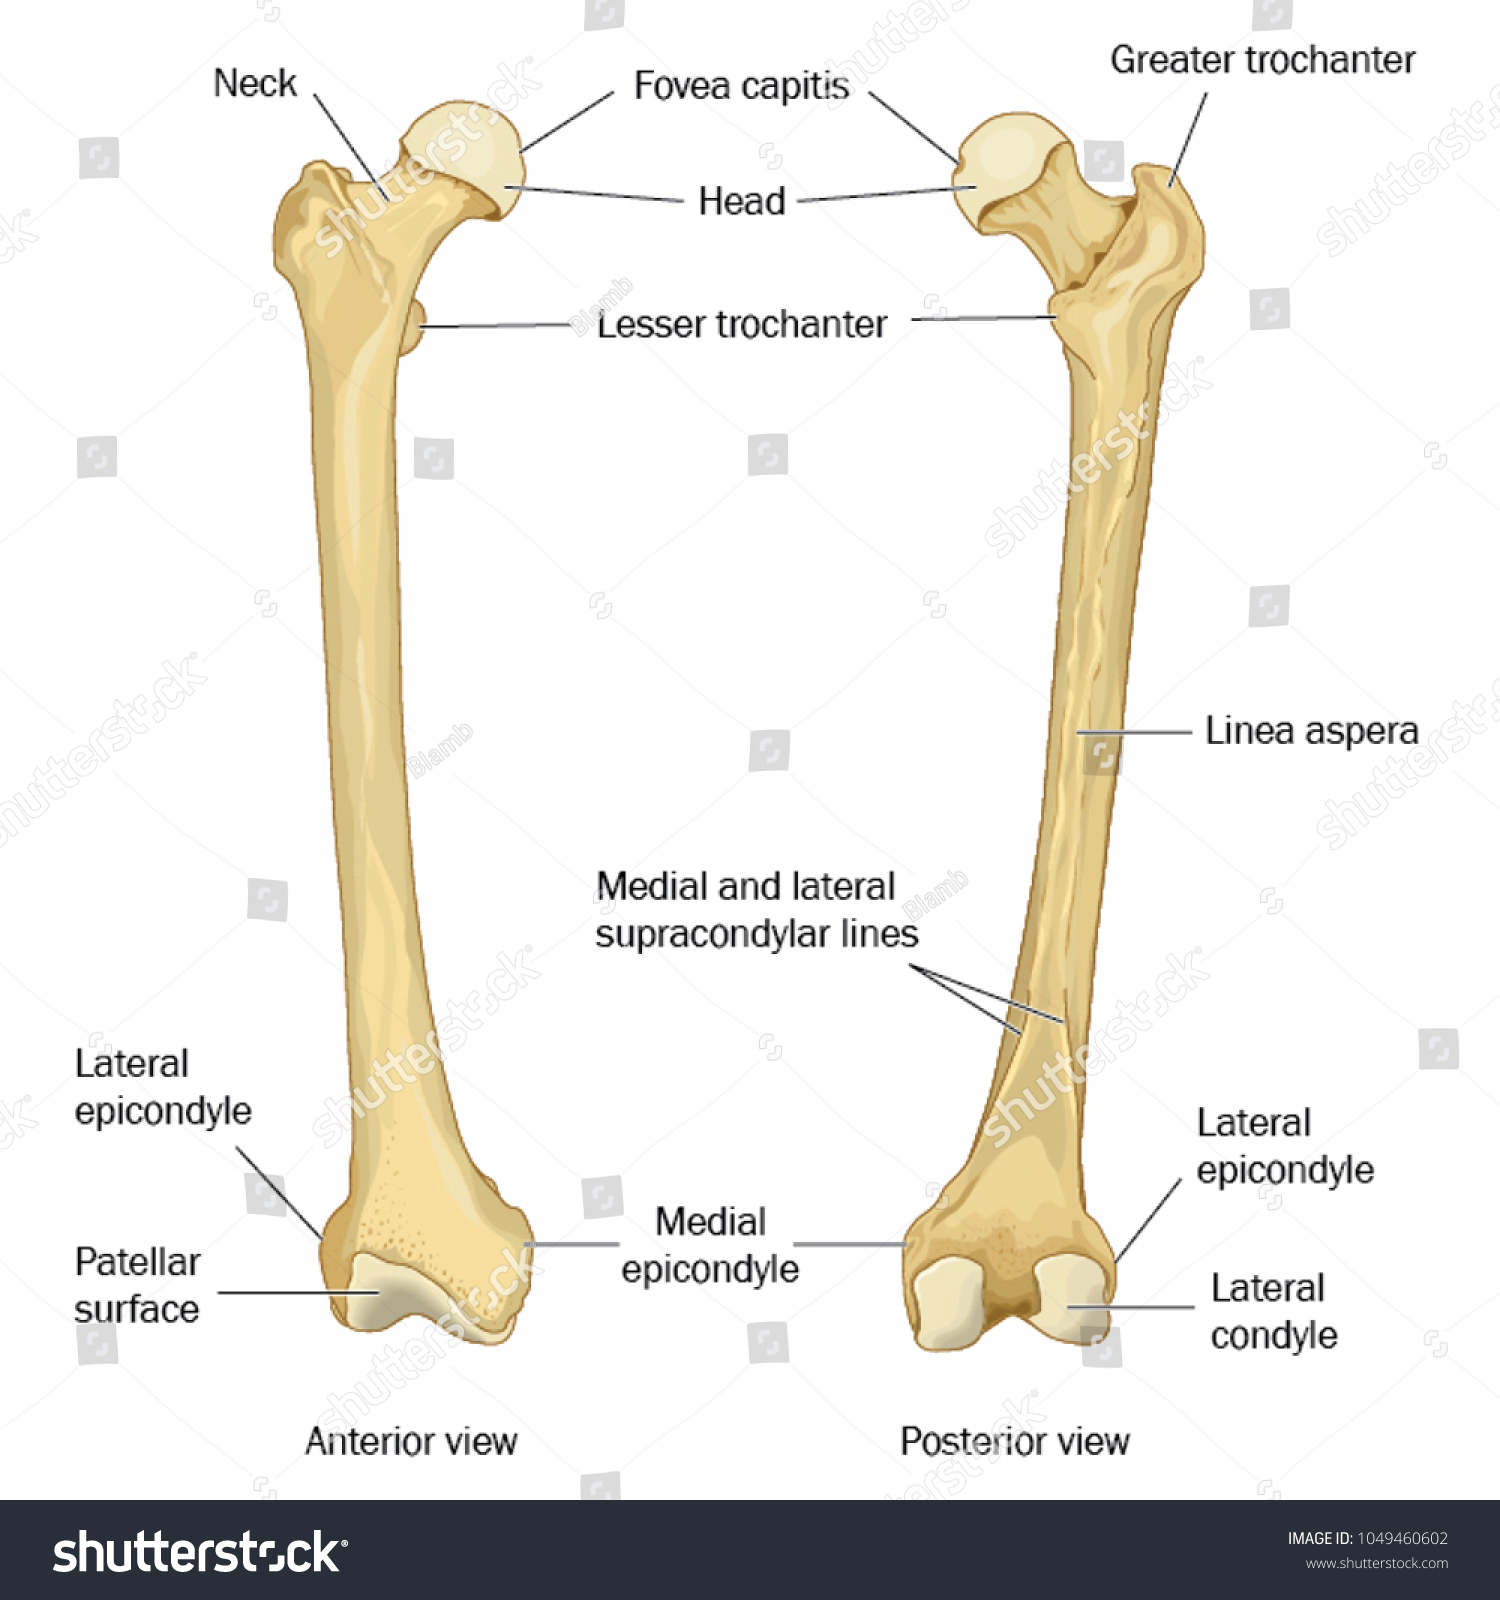 Pic Of Femur Bone